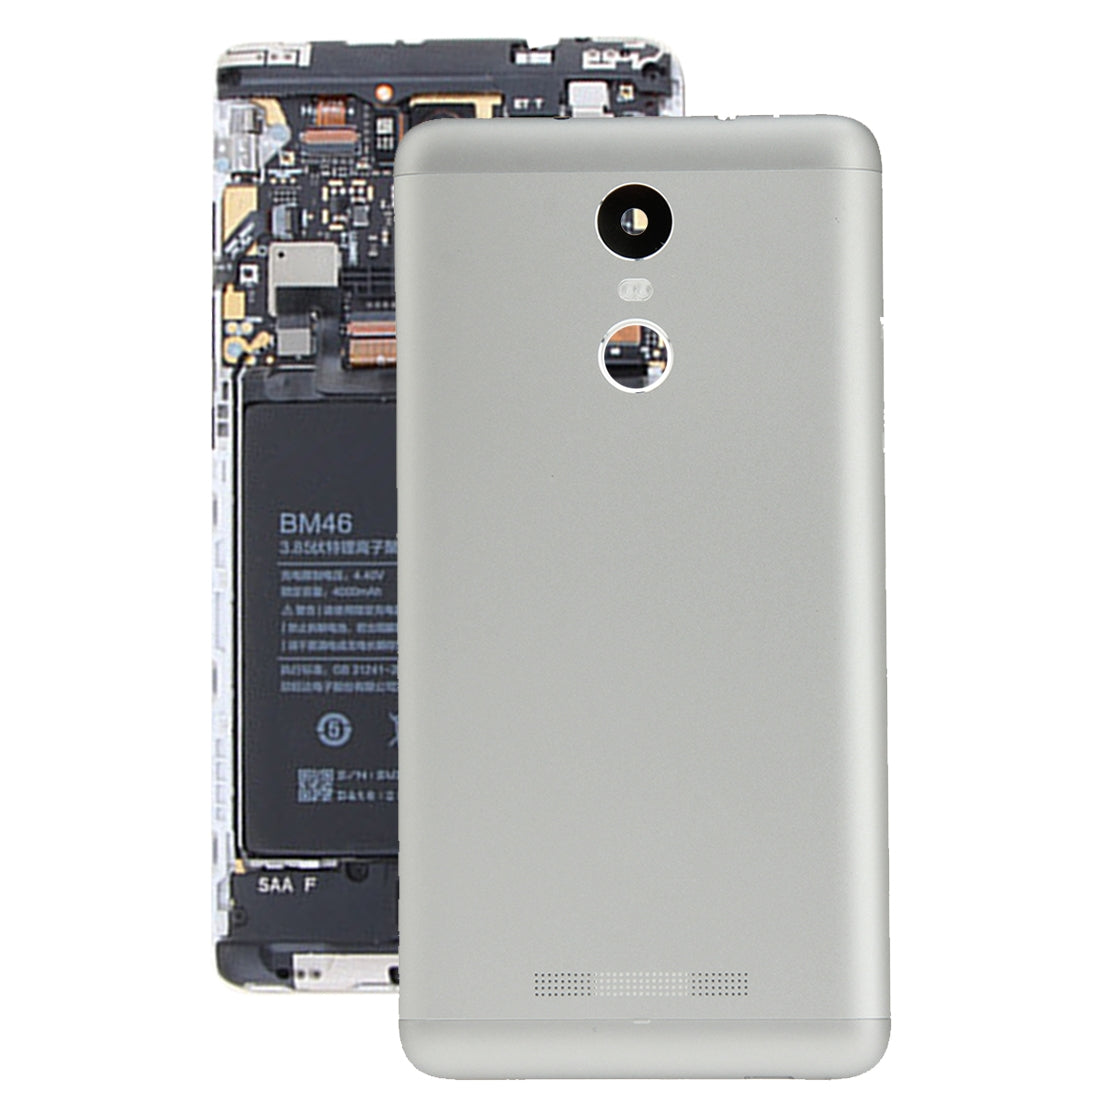 Tapa Bateria Back Cover Xiaomi Redmi Note 3 Plateado